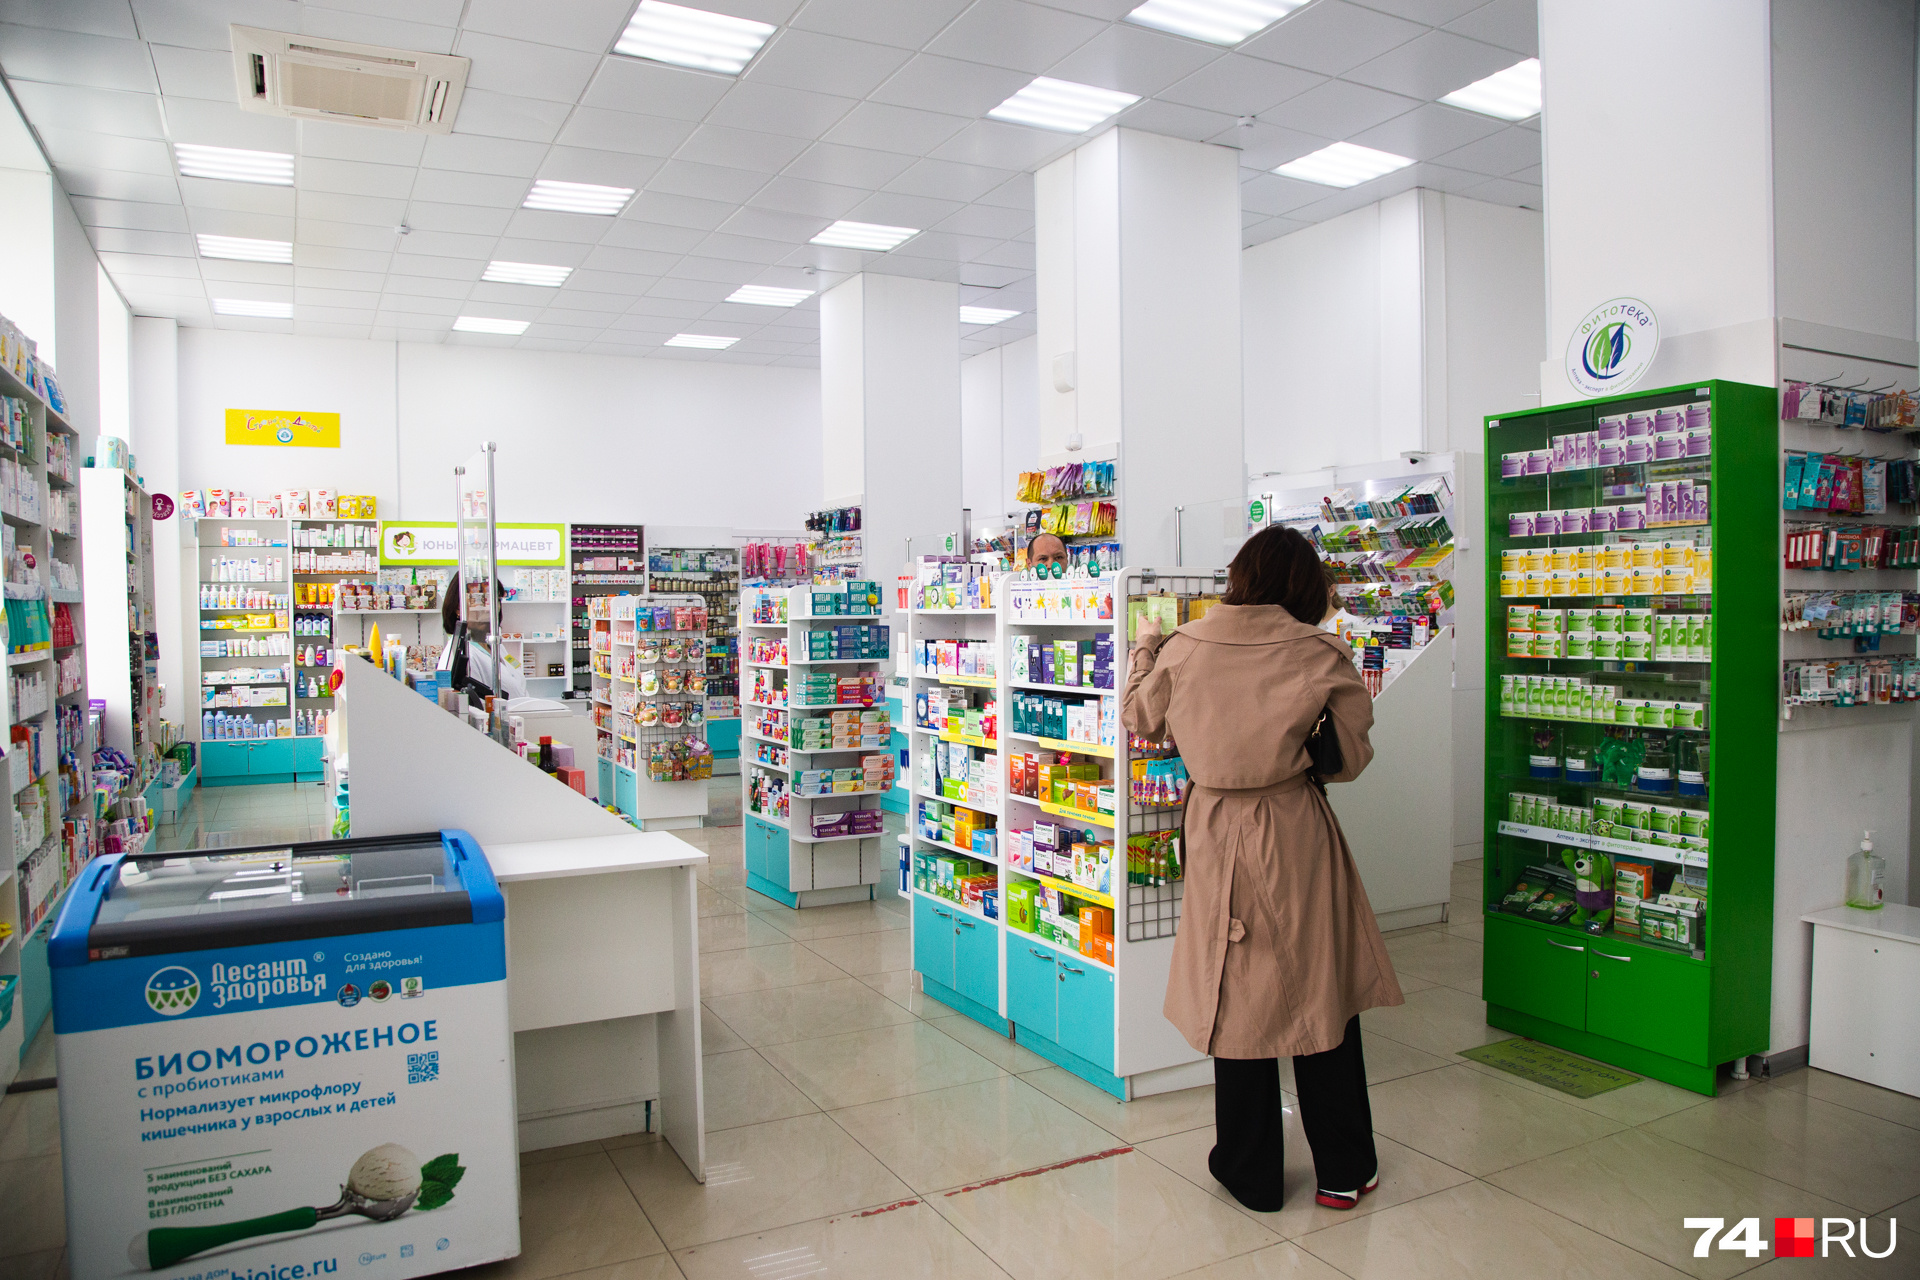 Аналоги у препарата есть, но их очень мало в Челябинске, и стоимость выше в 3 раза